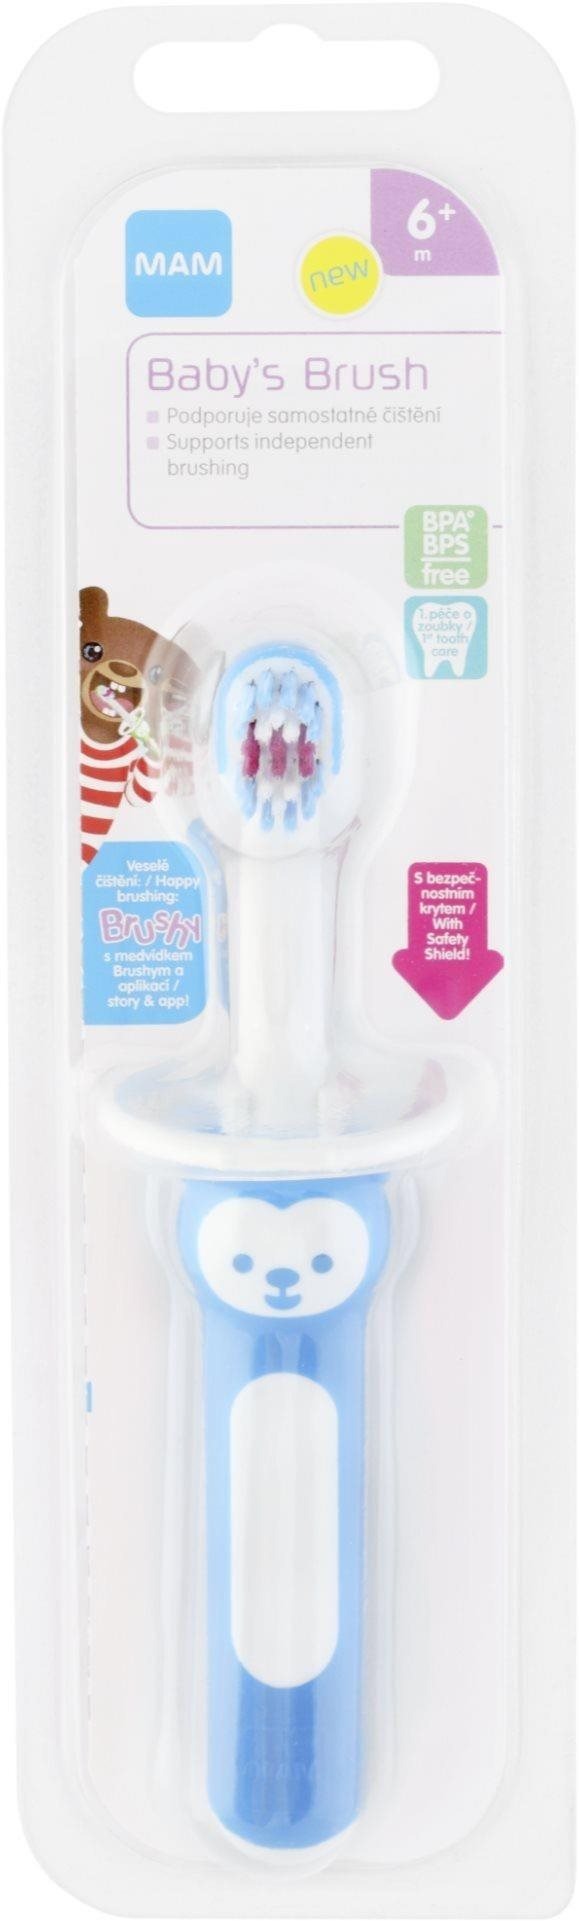 Dětský zubní kartáček MAM BABY'S Brush